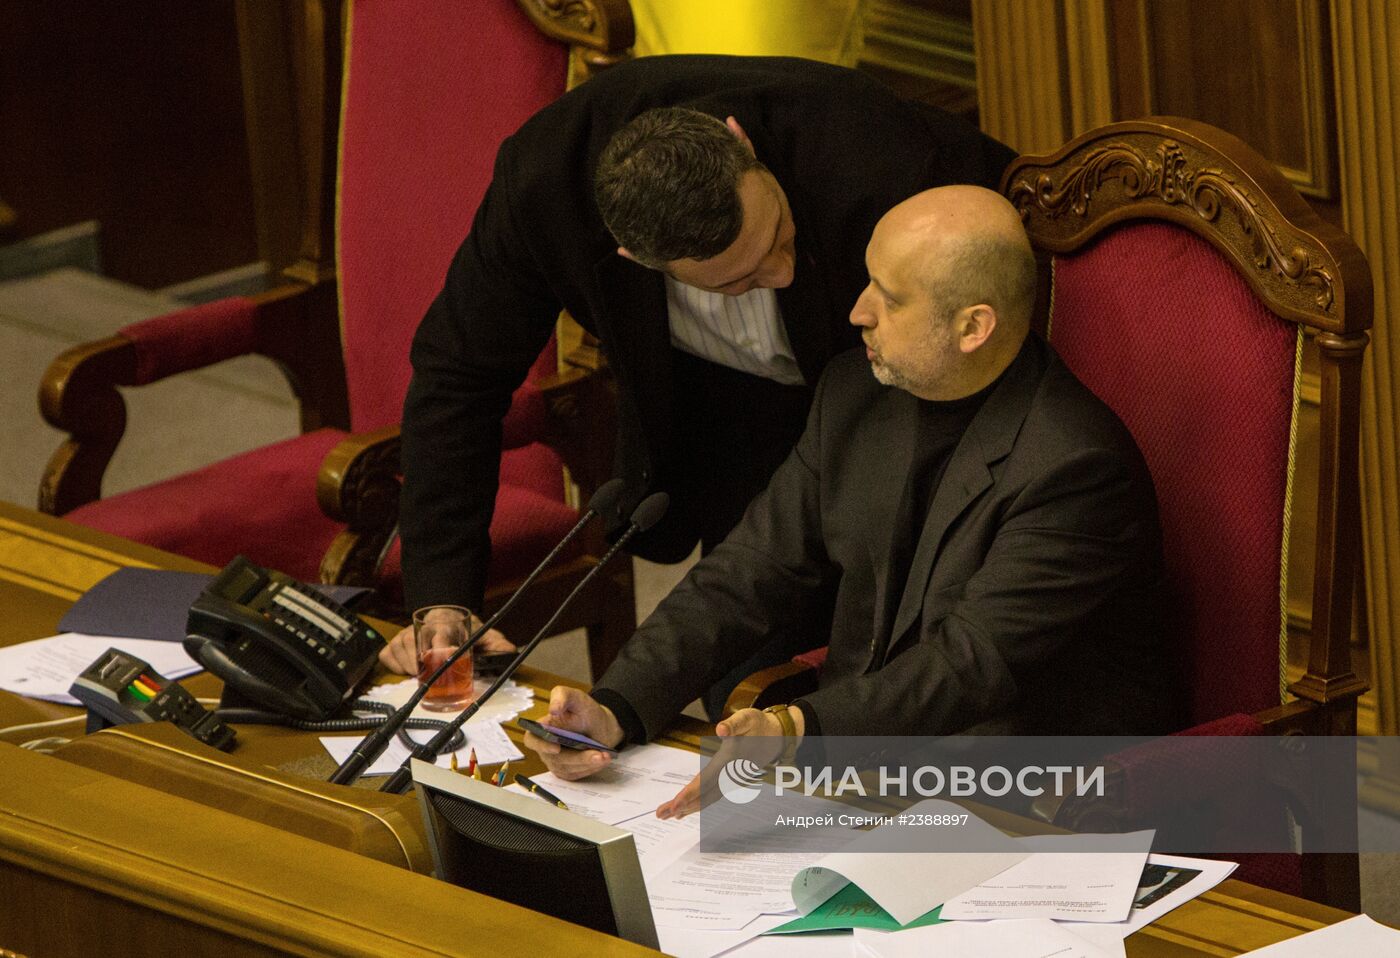 Заседание Верховный рады Украины